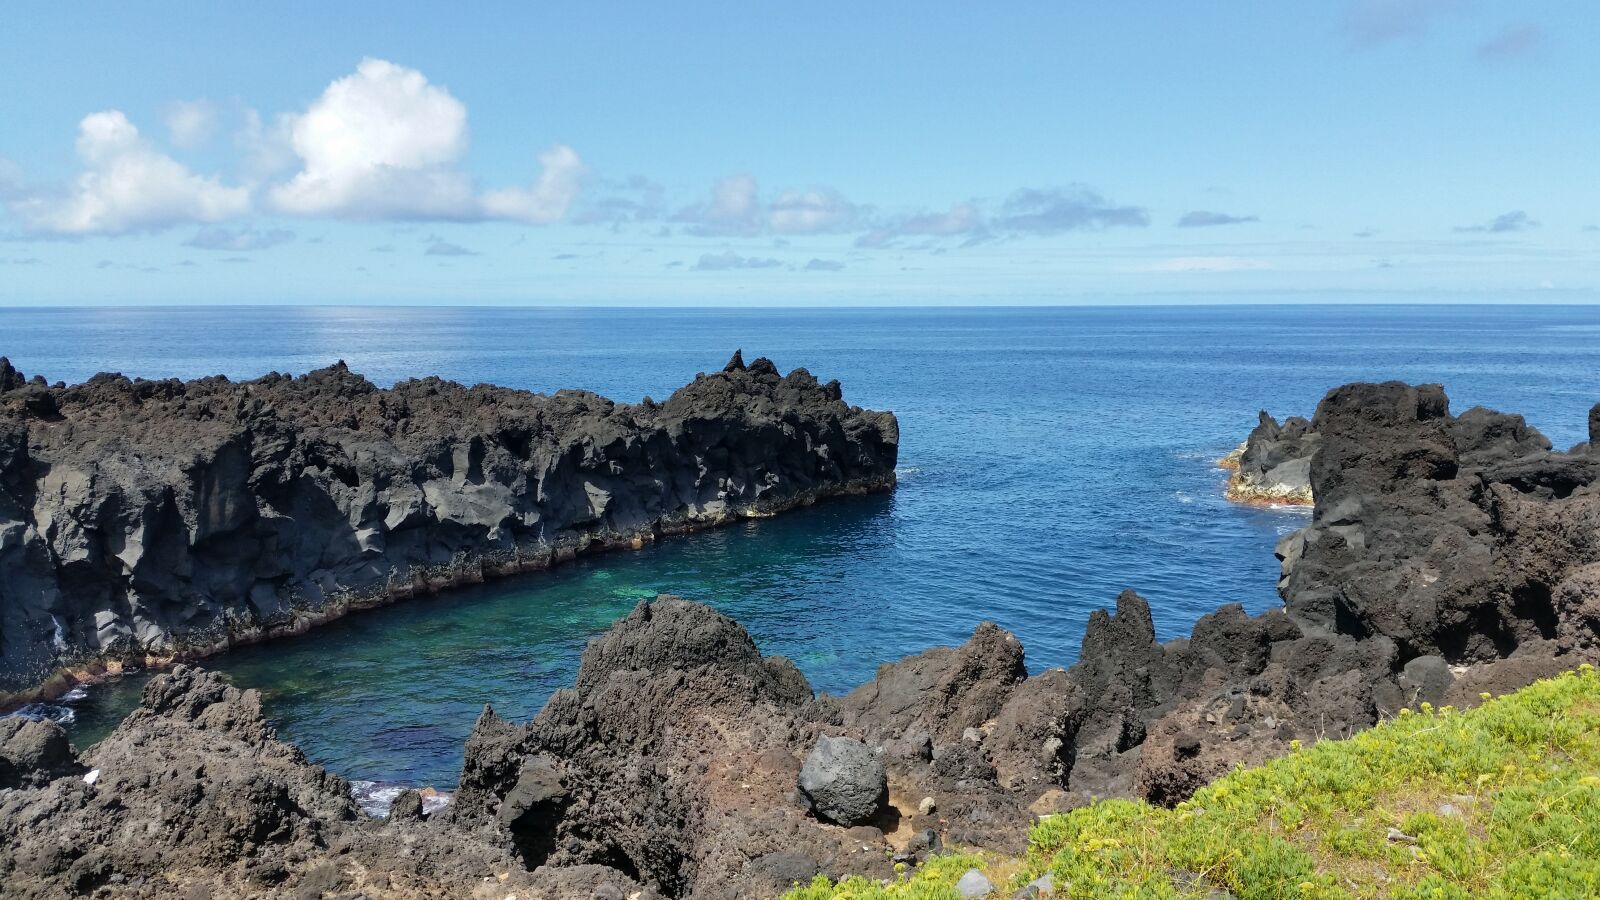 Samsung Galaxy S5 sample photo. Azores, flores, ocean photography